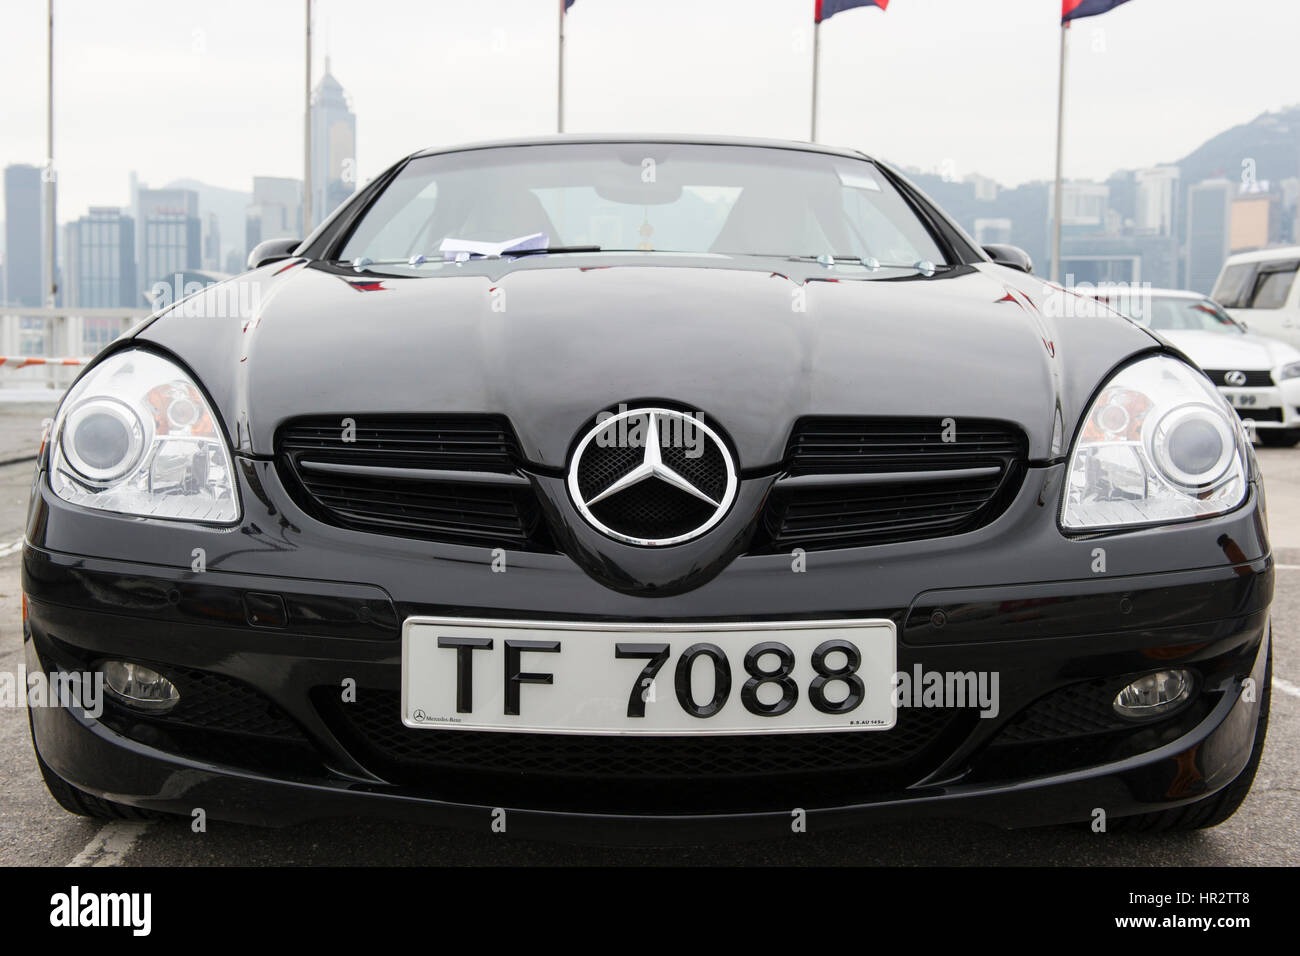 Hong Kong-Kfz-Kennzeichen auf einem Mercedes Stockfotografie - Alamy